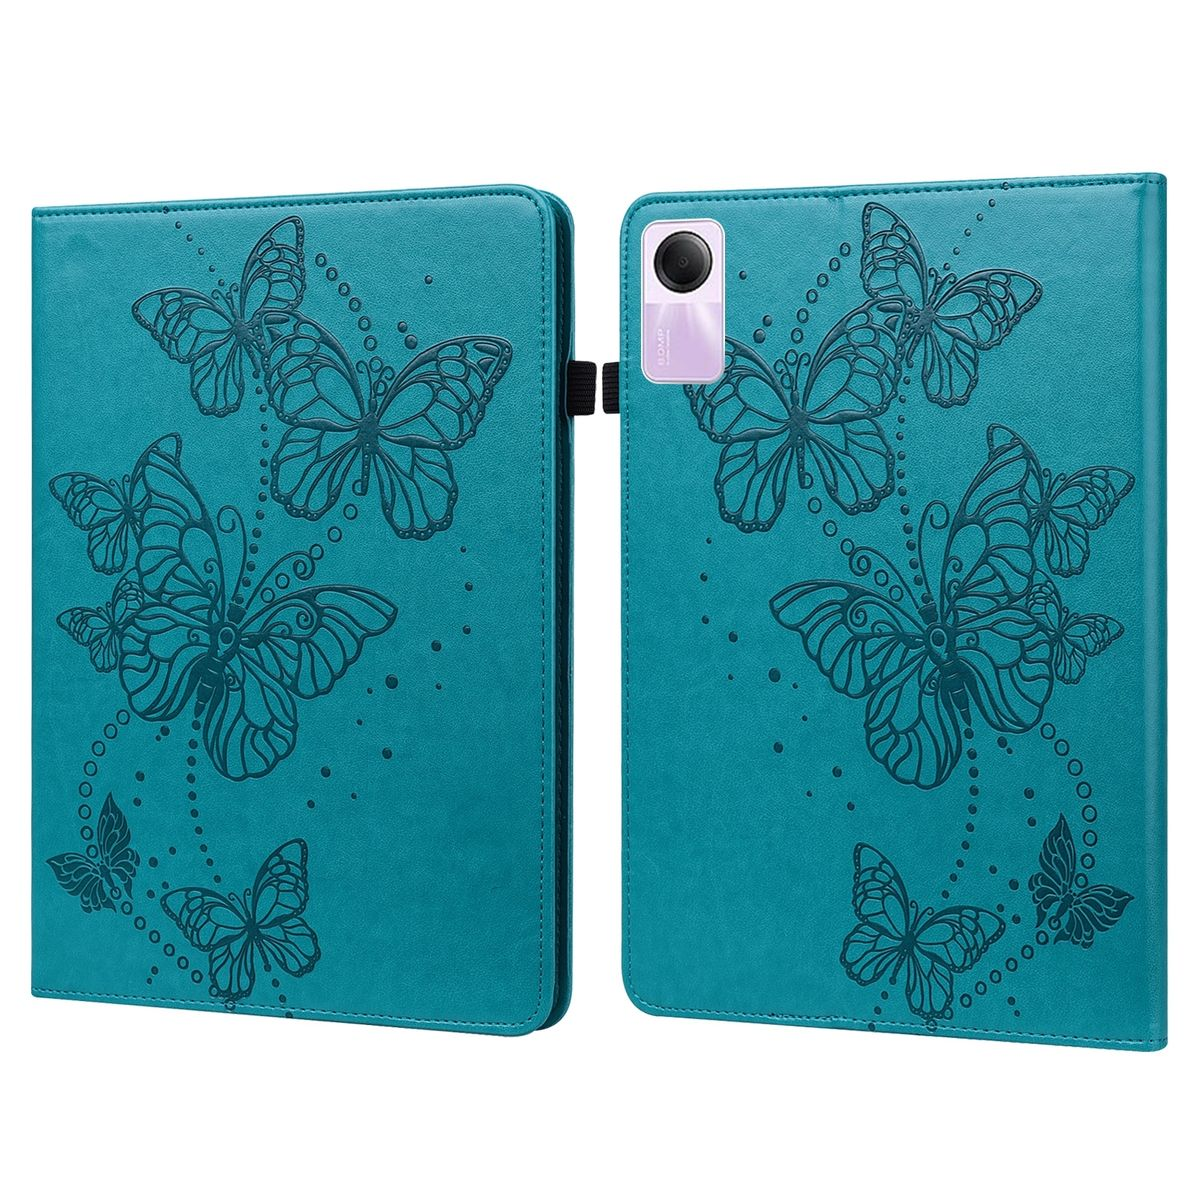 WIGENTO Aufstellbare Pad / Tasche Schmetterling Redmi SE Motiv, 2 11 Kunst-Leder Xiaomi, Zoll, Bookcover, Blau